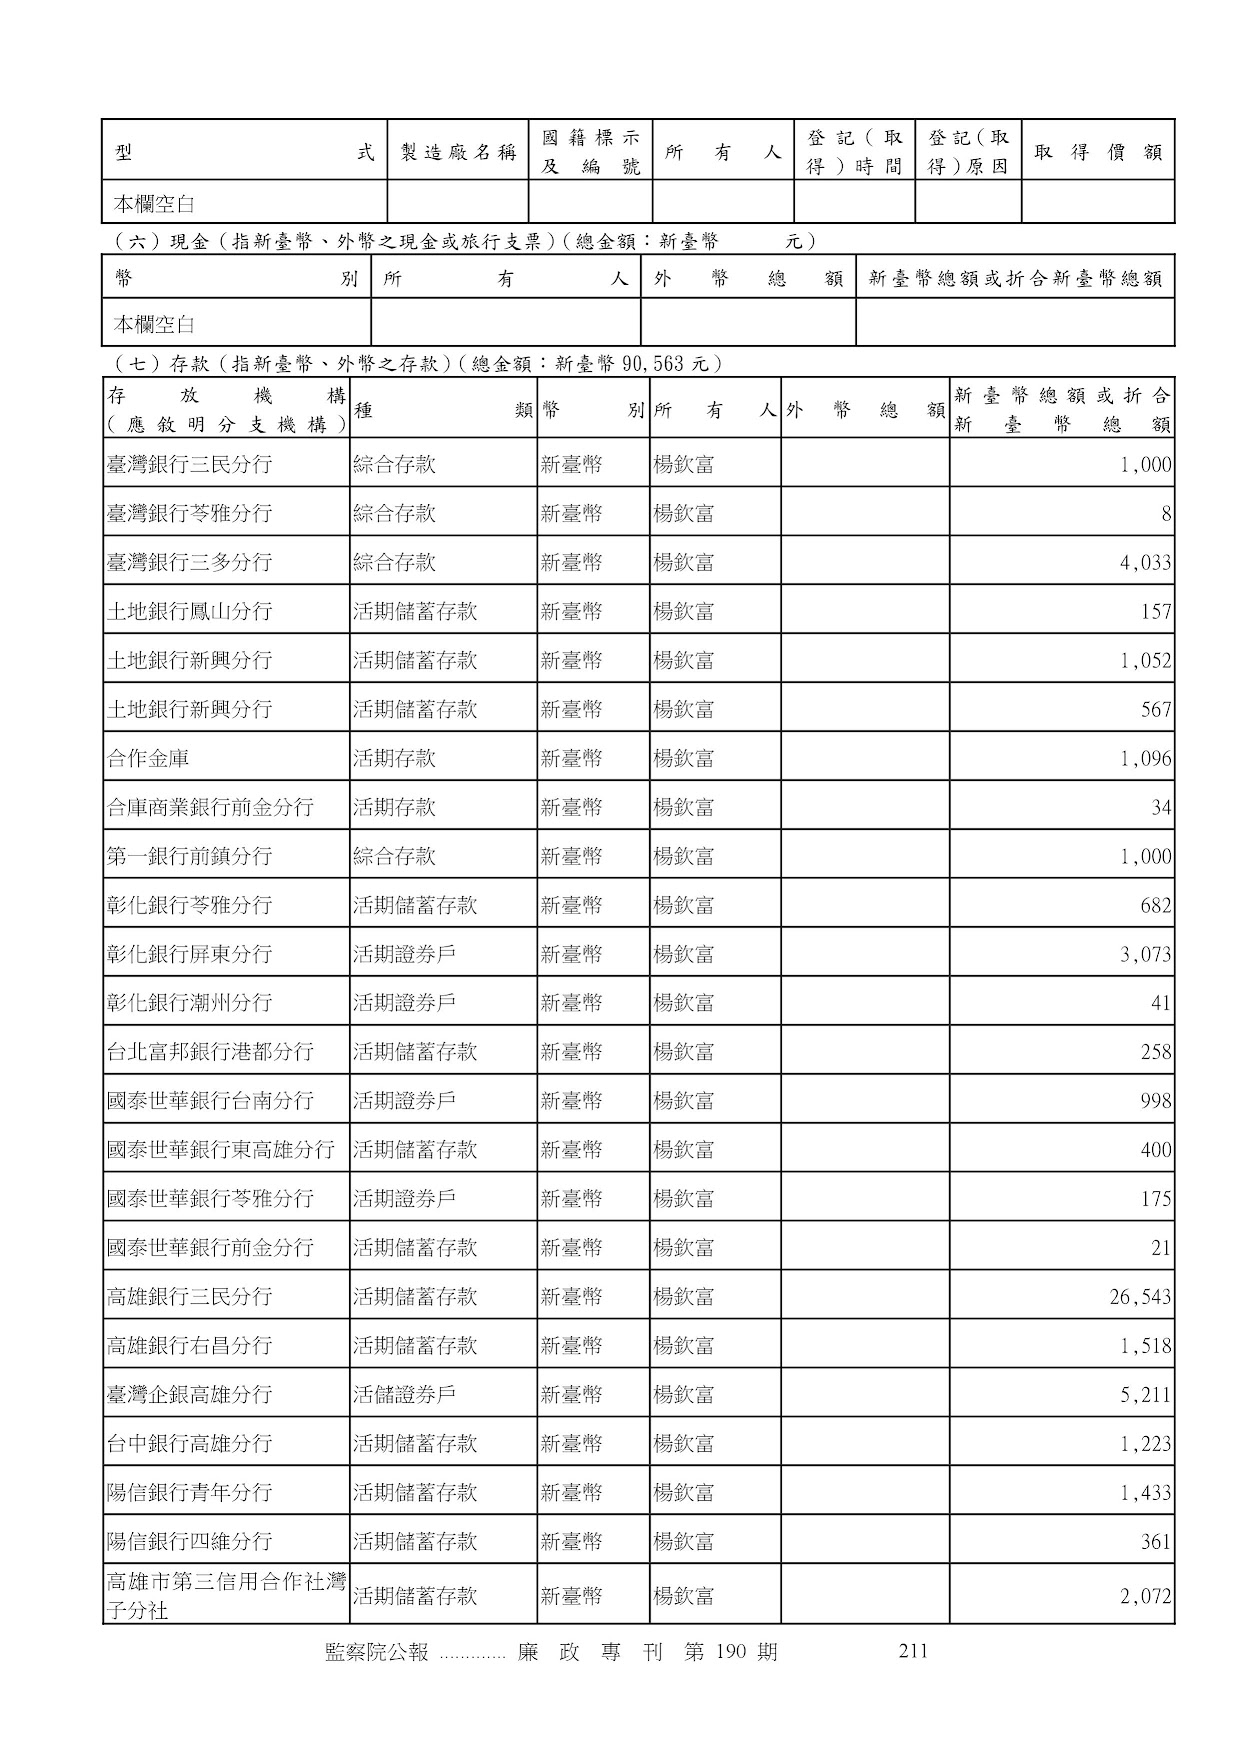 楊欽富-公職人員財產申報資料-廉政專刊第190期